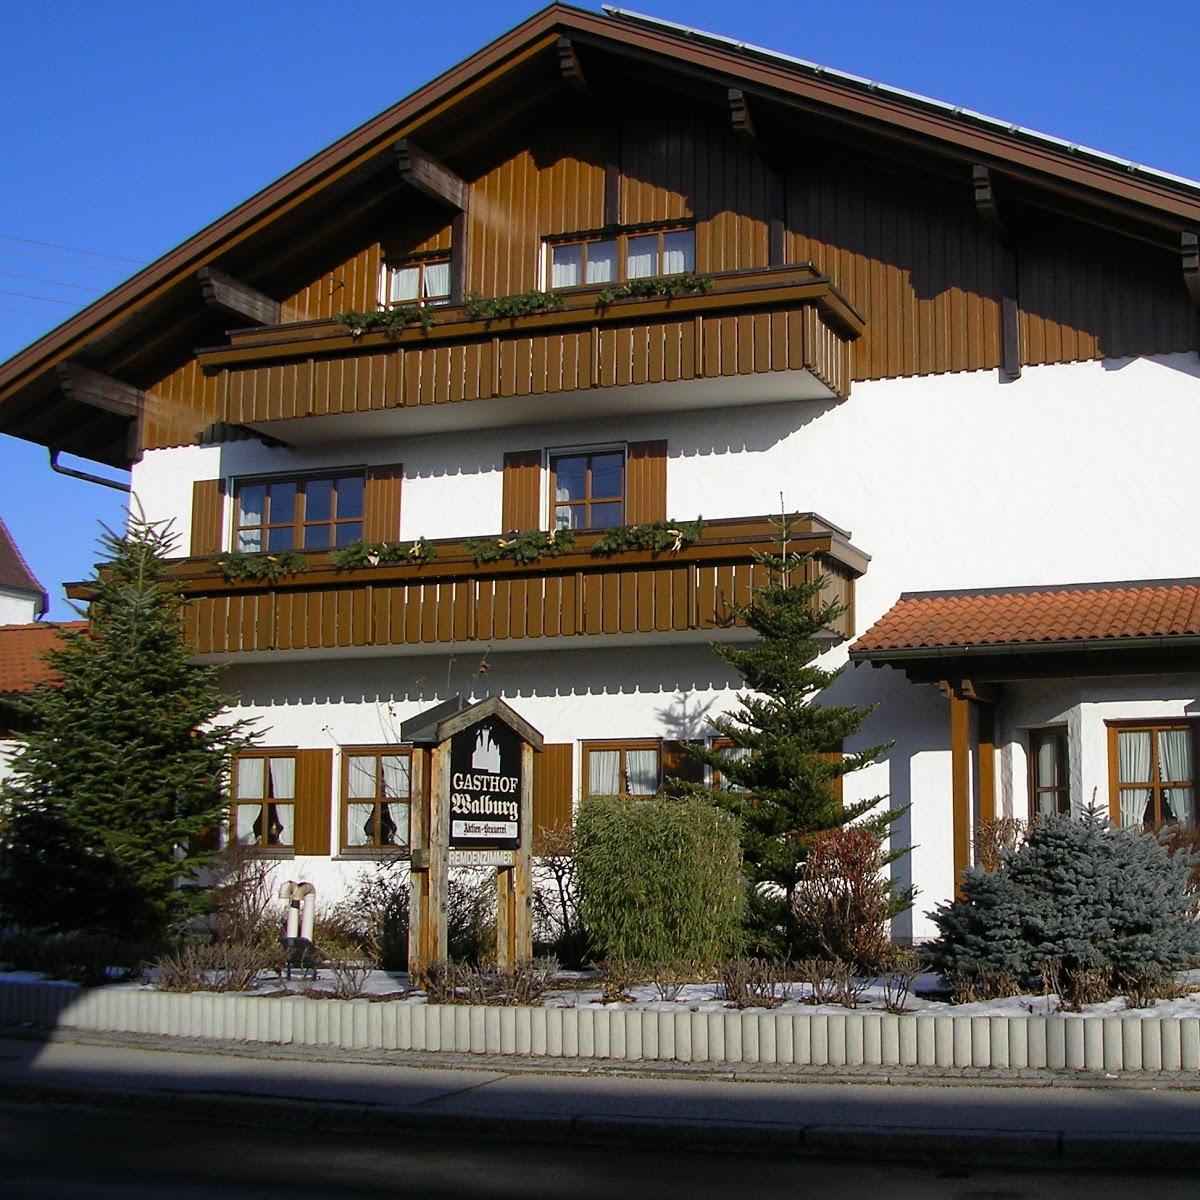 Restaurant "Gasthof Walburg" in  Ruderatshofen